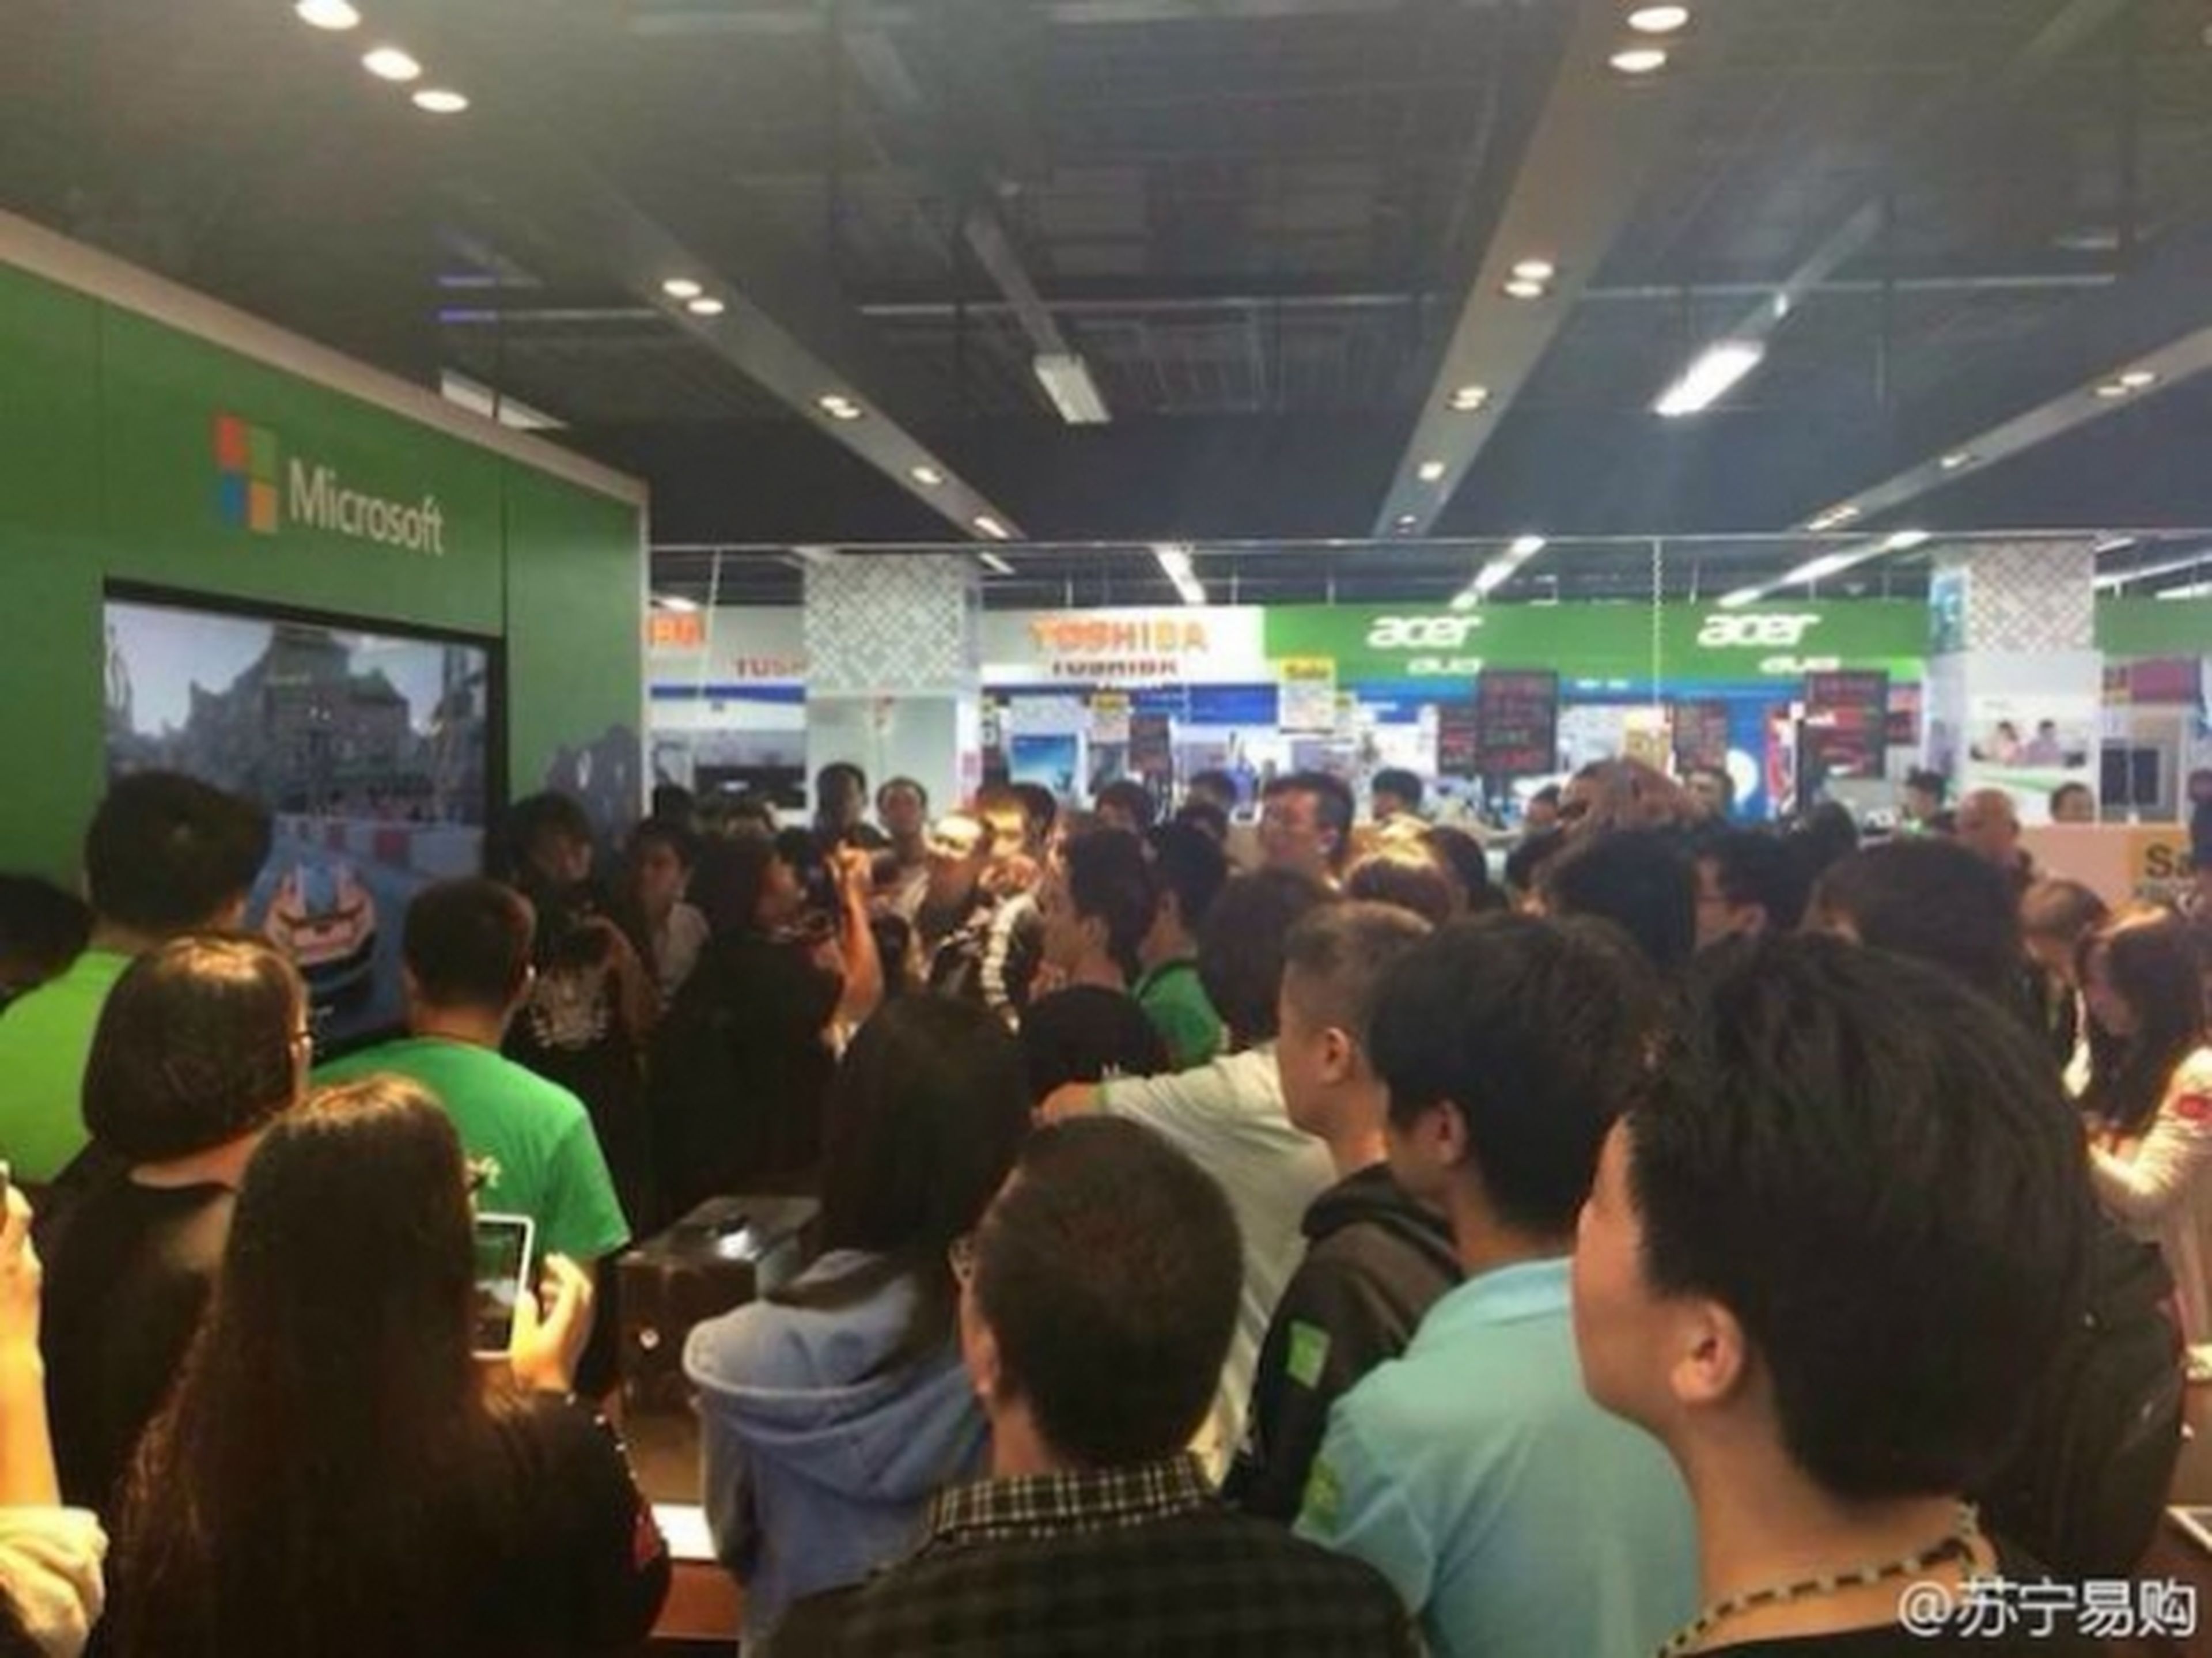 Xbox One triunfa en su lanzamiento en China